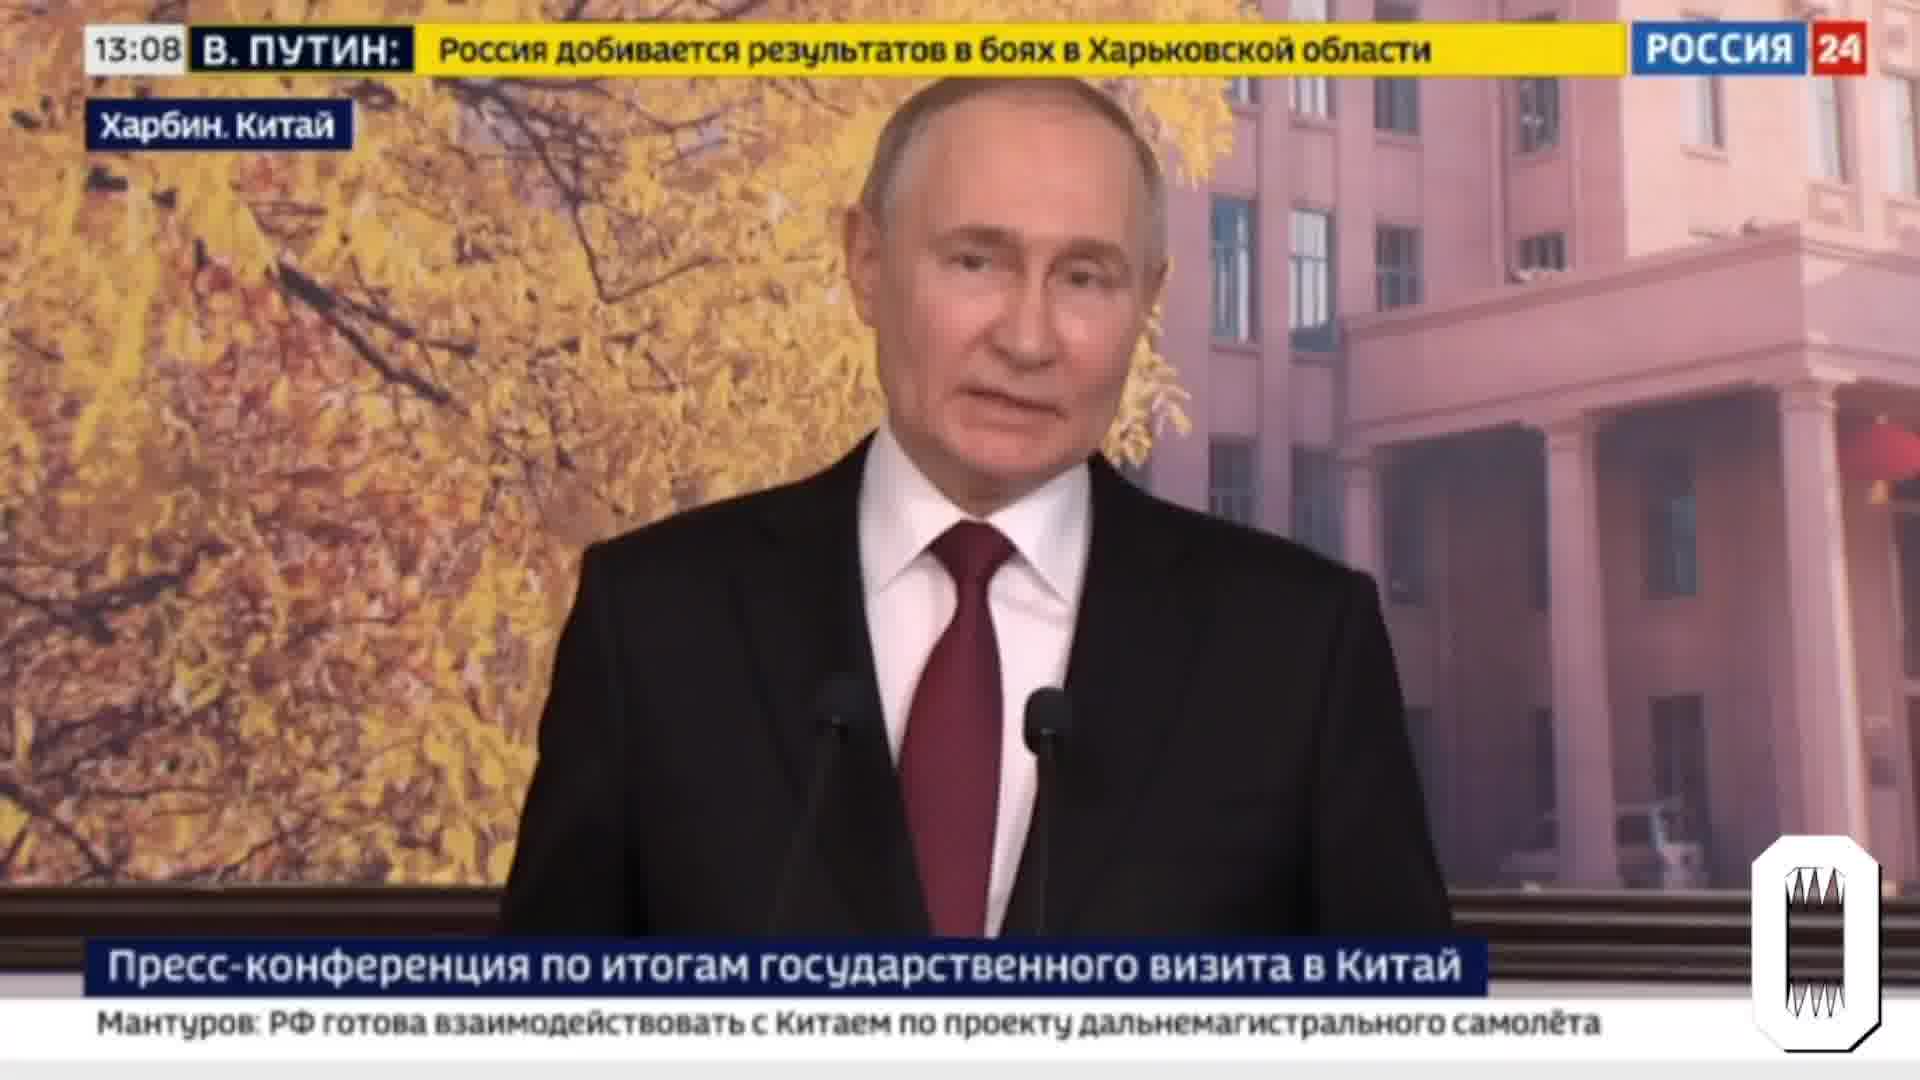 Putin hovorí, že ruská armáda nemá žiadne rozkazy na dobytie Charkova, vojaci vytvárajú sanitárnu zónu blízko hraníc